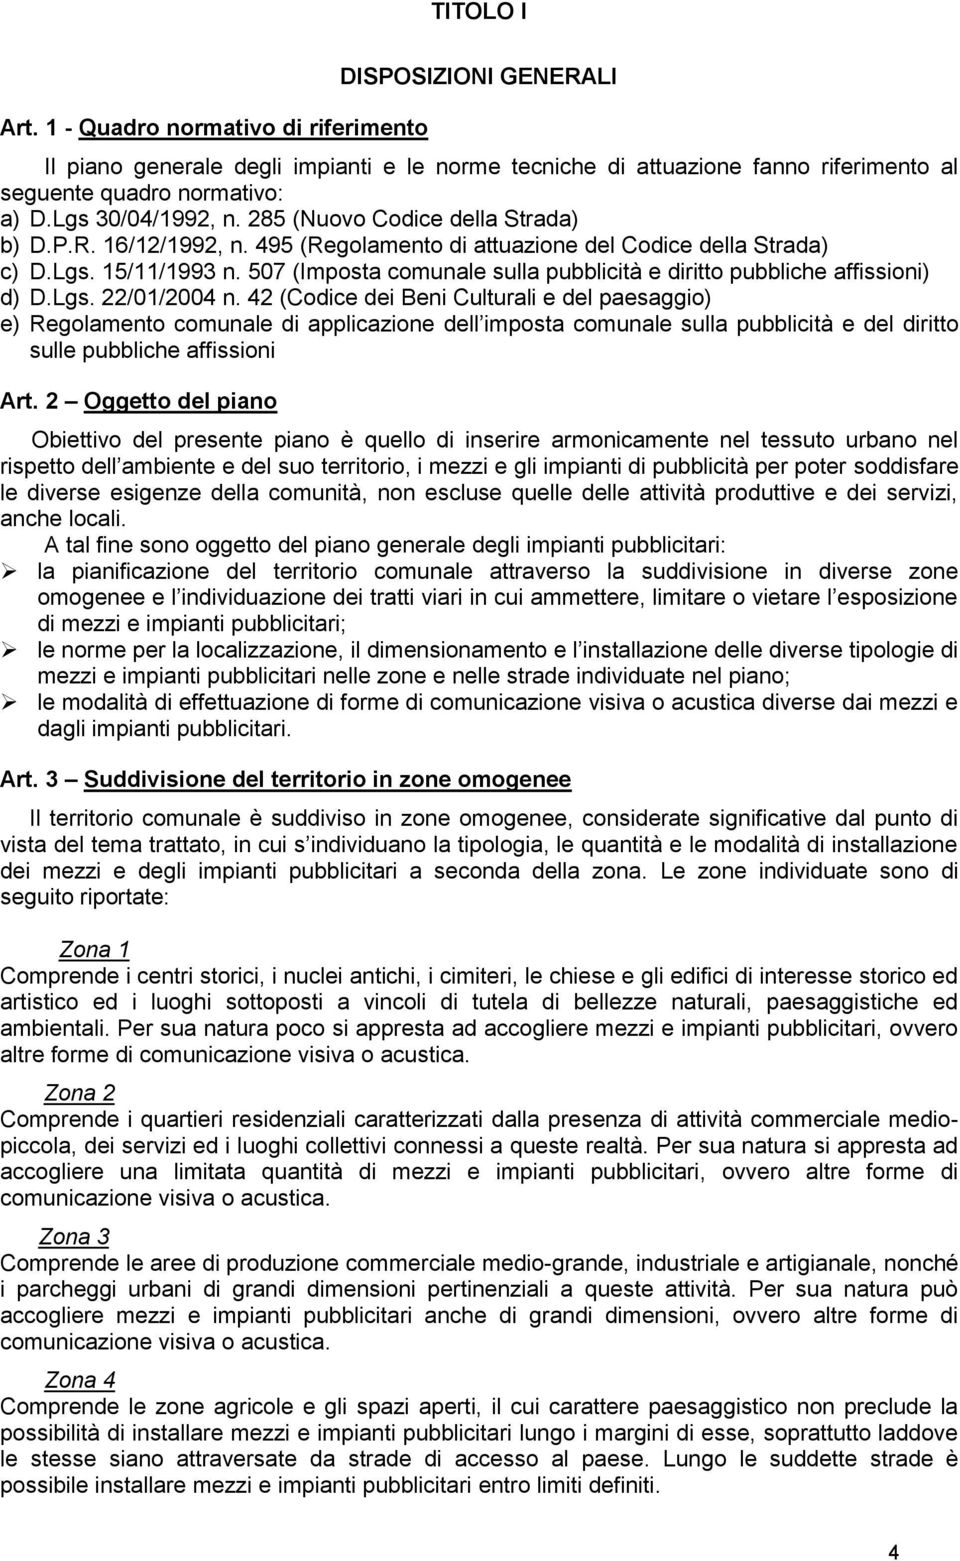 507 (Imposta comunale sulla pubblicità e diritto pubbliche affissioni) d) D.Lgs. 22/01/2004 n.